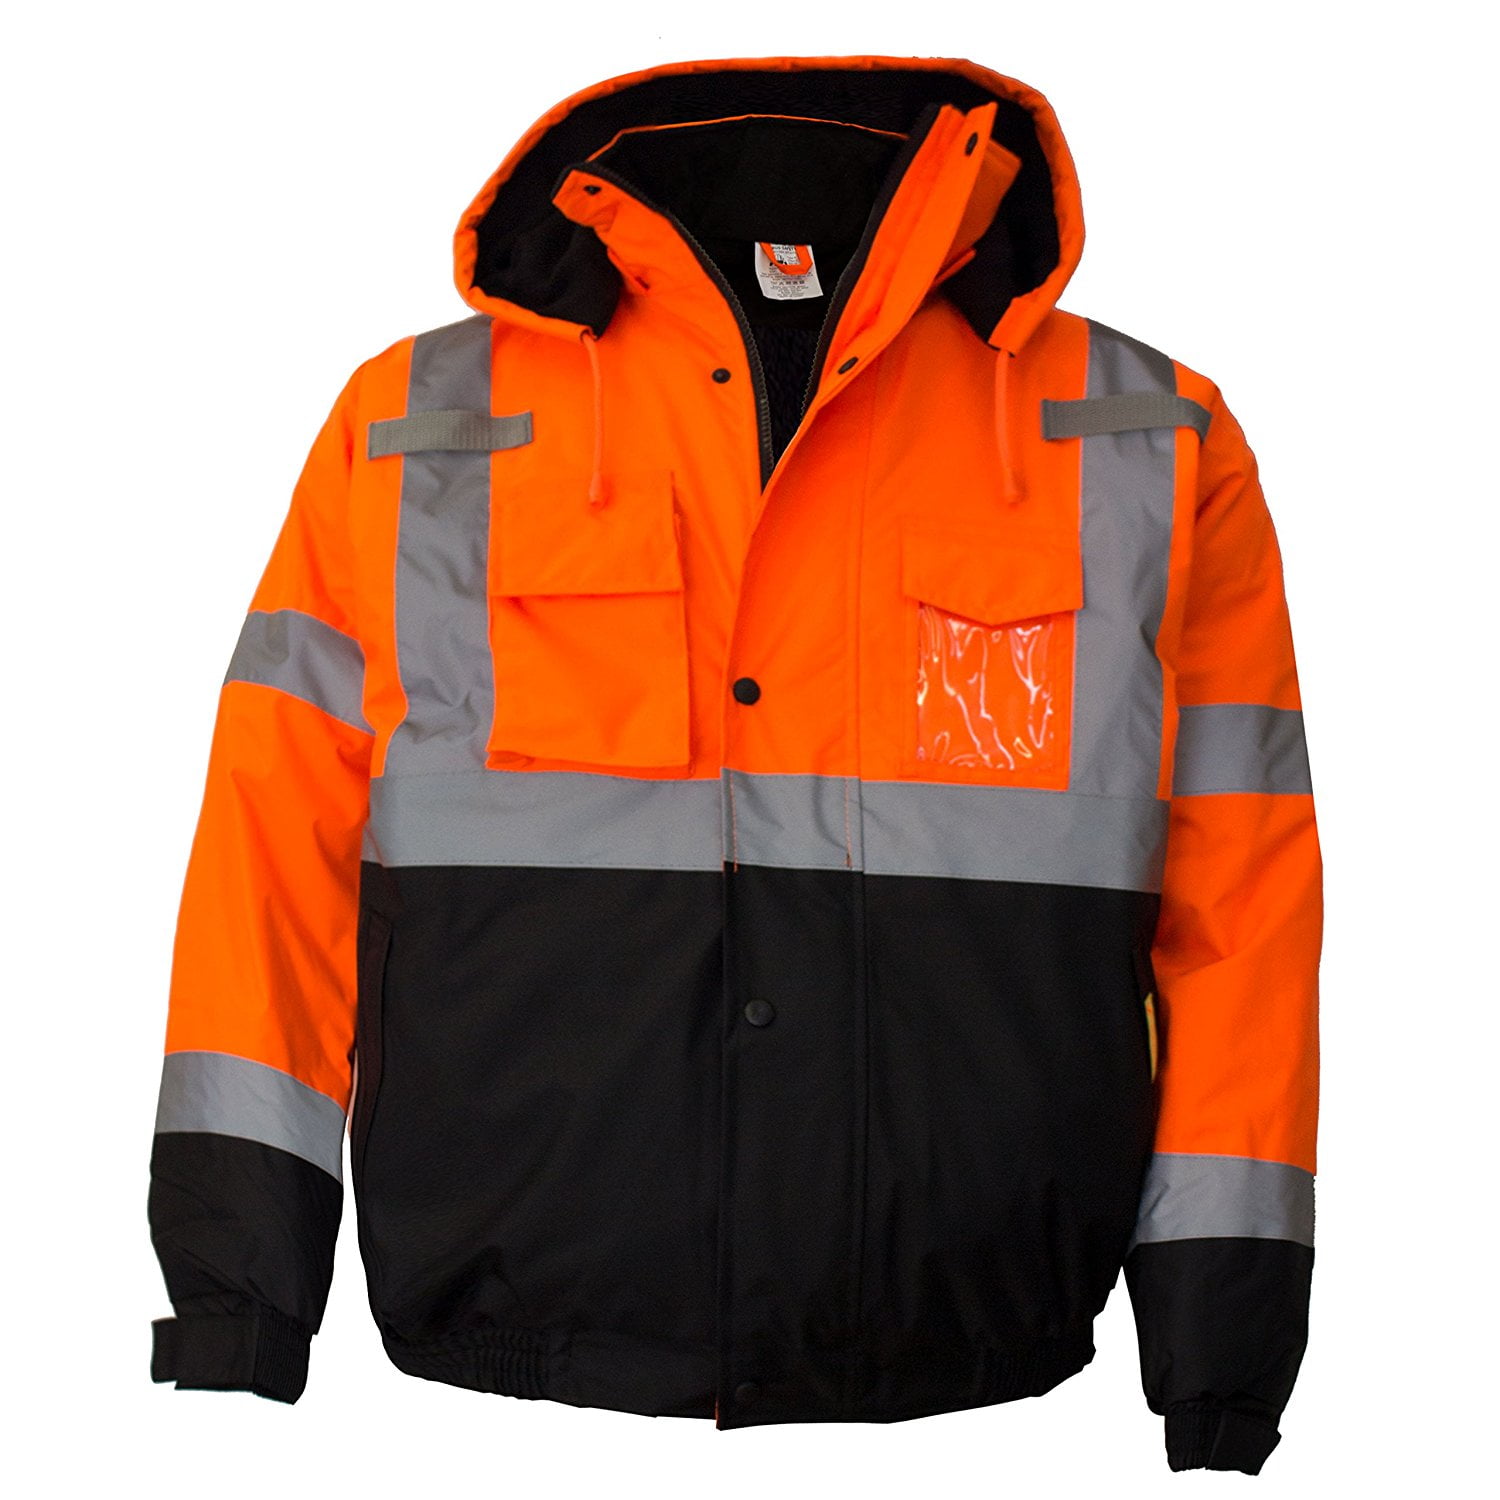 Mens Hi Vis Visibility Viz Premium Safety Lined Work Wear Bomber Fleece Jackets 